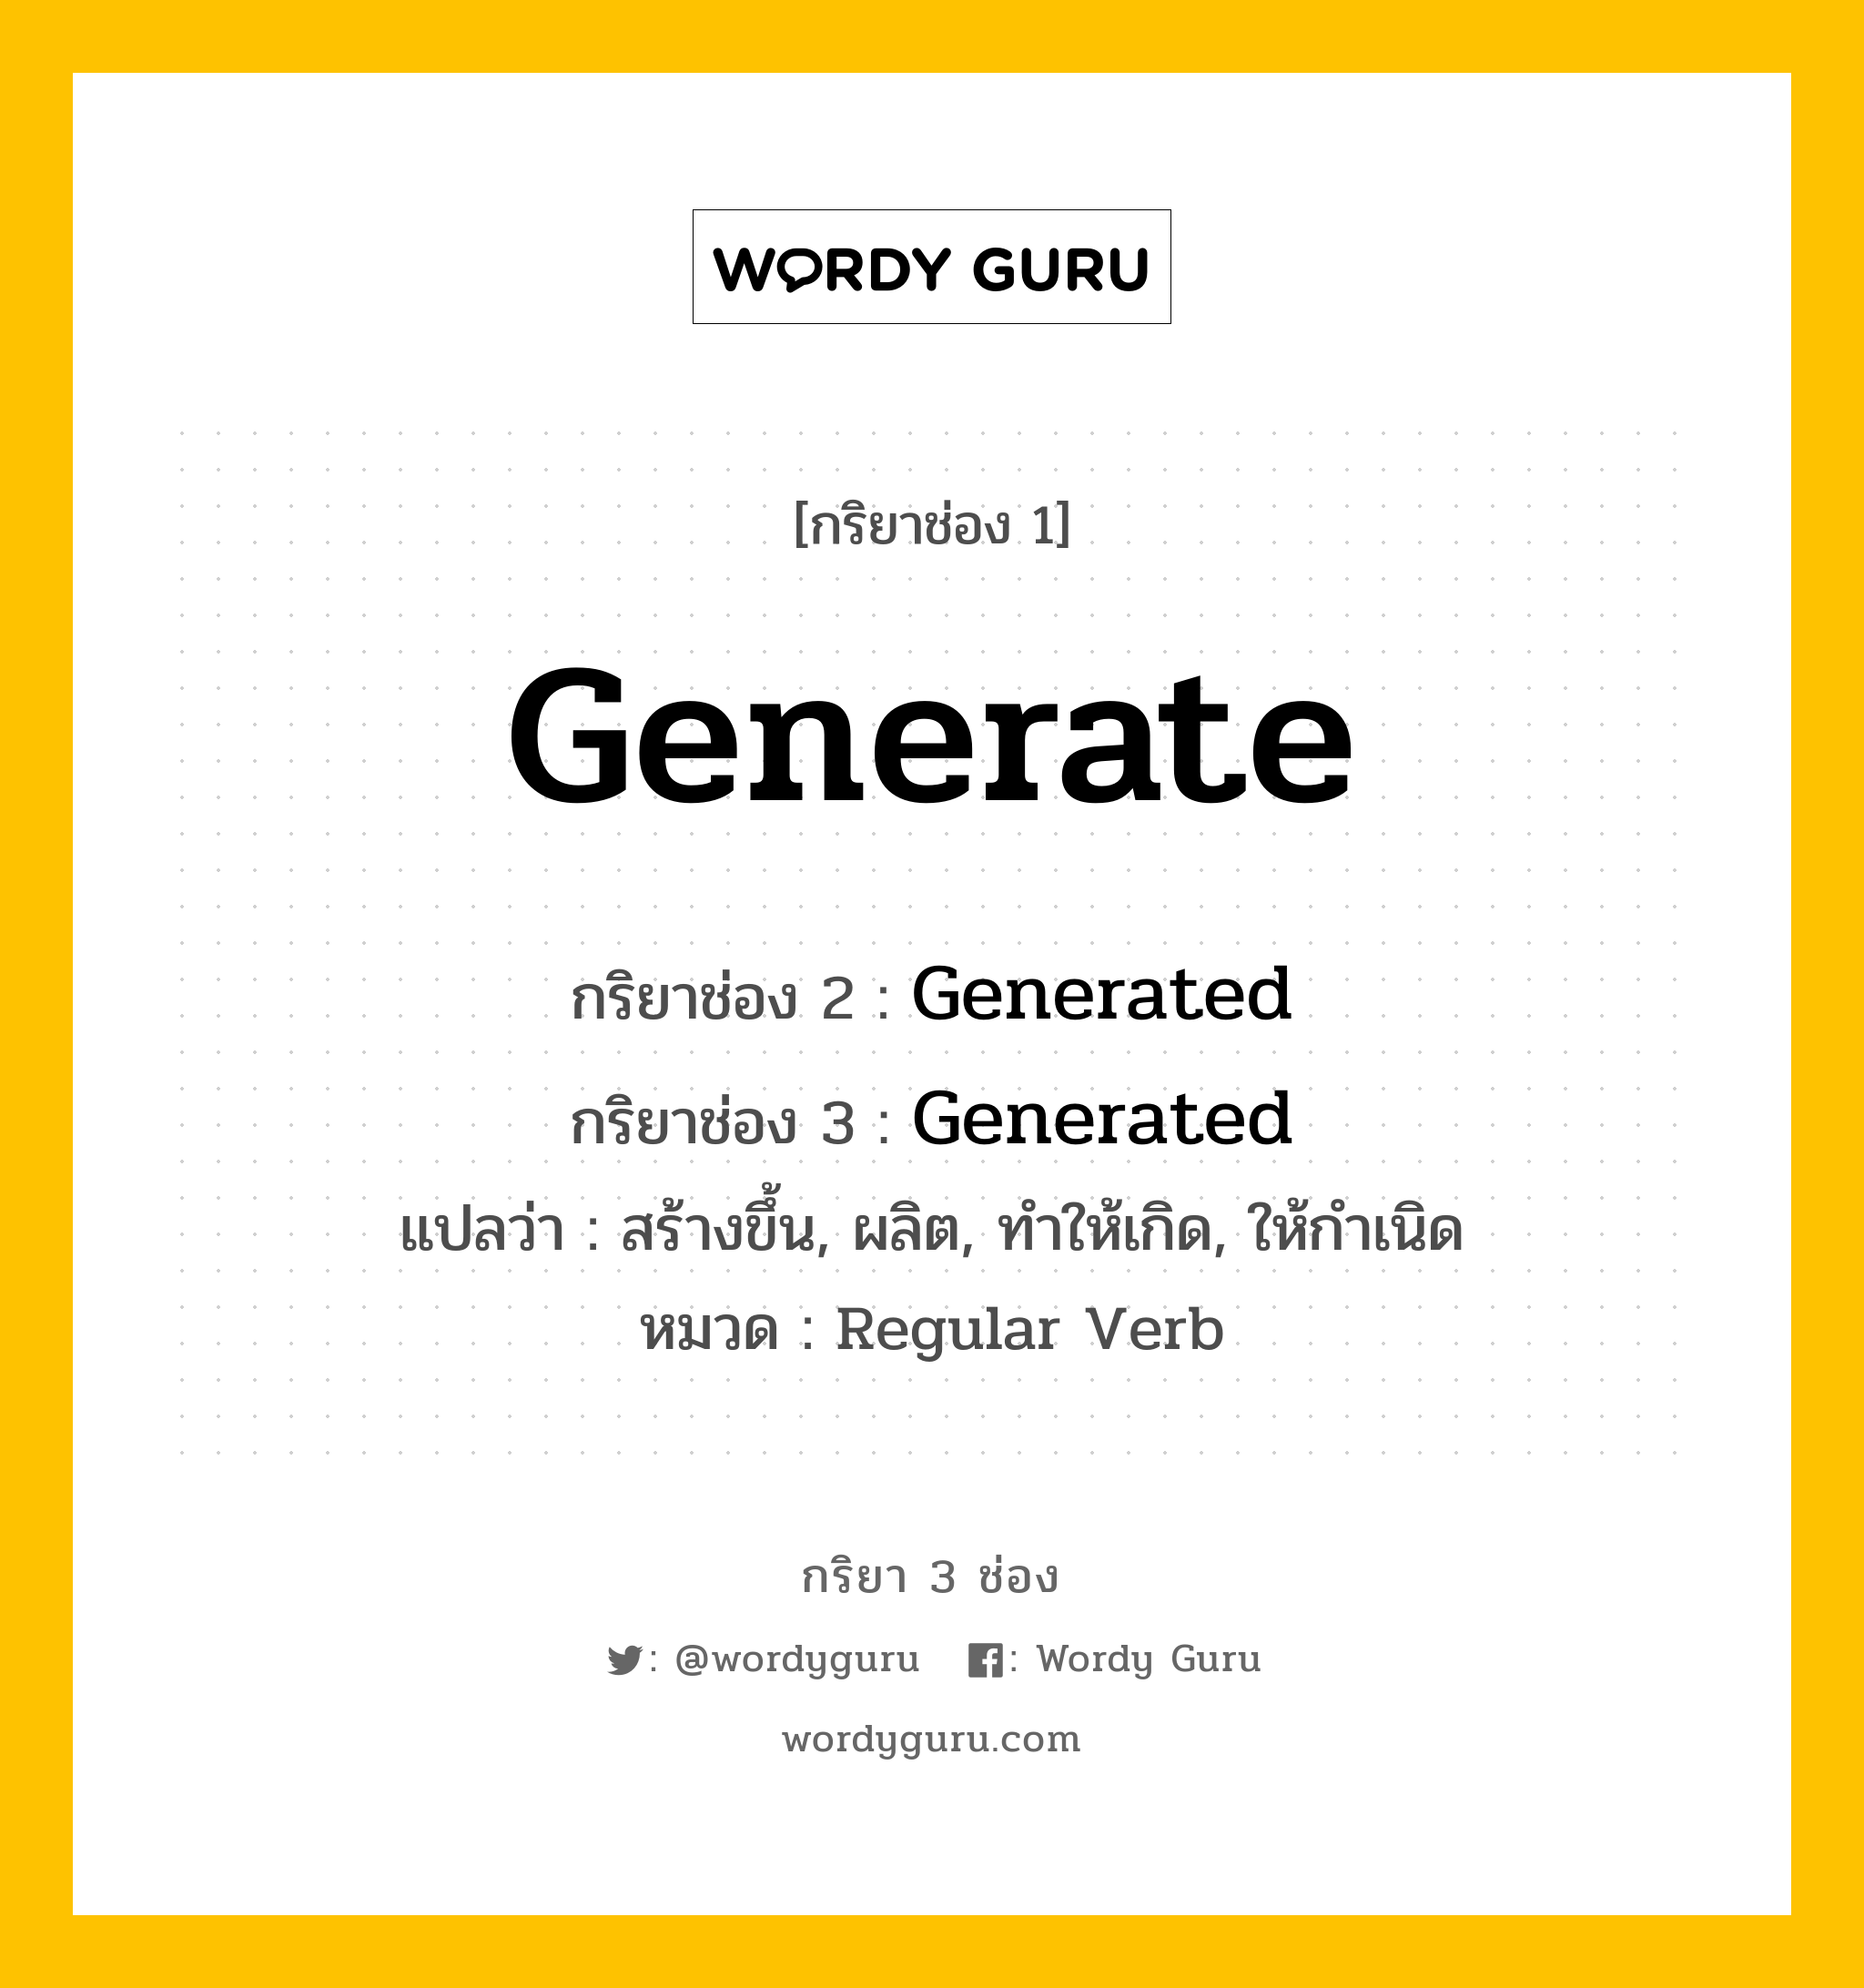 กริยา 3 ช่อง: Generate ช่อง 2 Generate ช่อง 3 คืออะไร, กริยาช่อง 1 Generate กริยาช่อง 2 Generated กริยาช่อง 3 Generated แปลว่า สร้างขึ้น, ผลิต, ทำให้เกิด, ให้กำเนิด หมวด Regular Verb หมวด Regular Verb